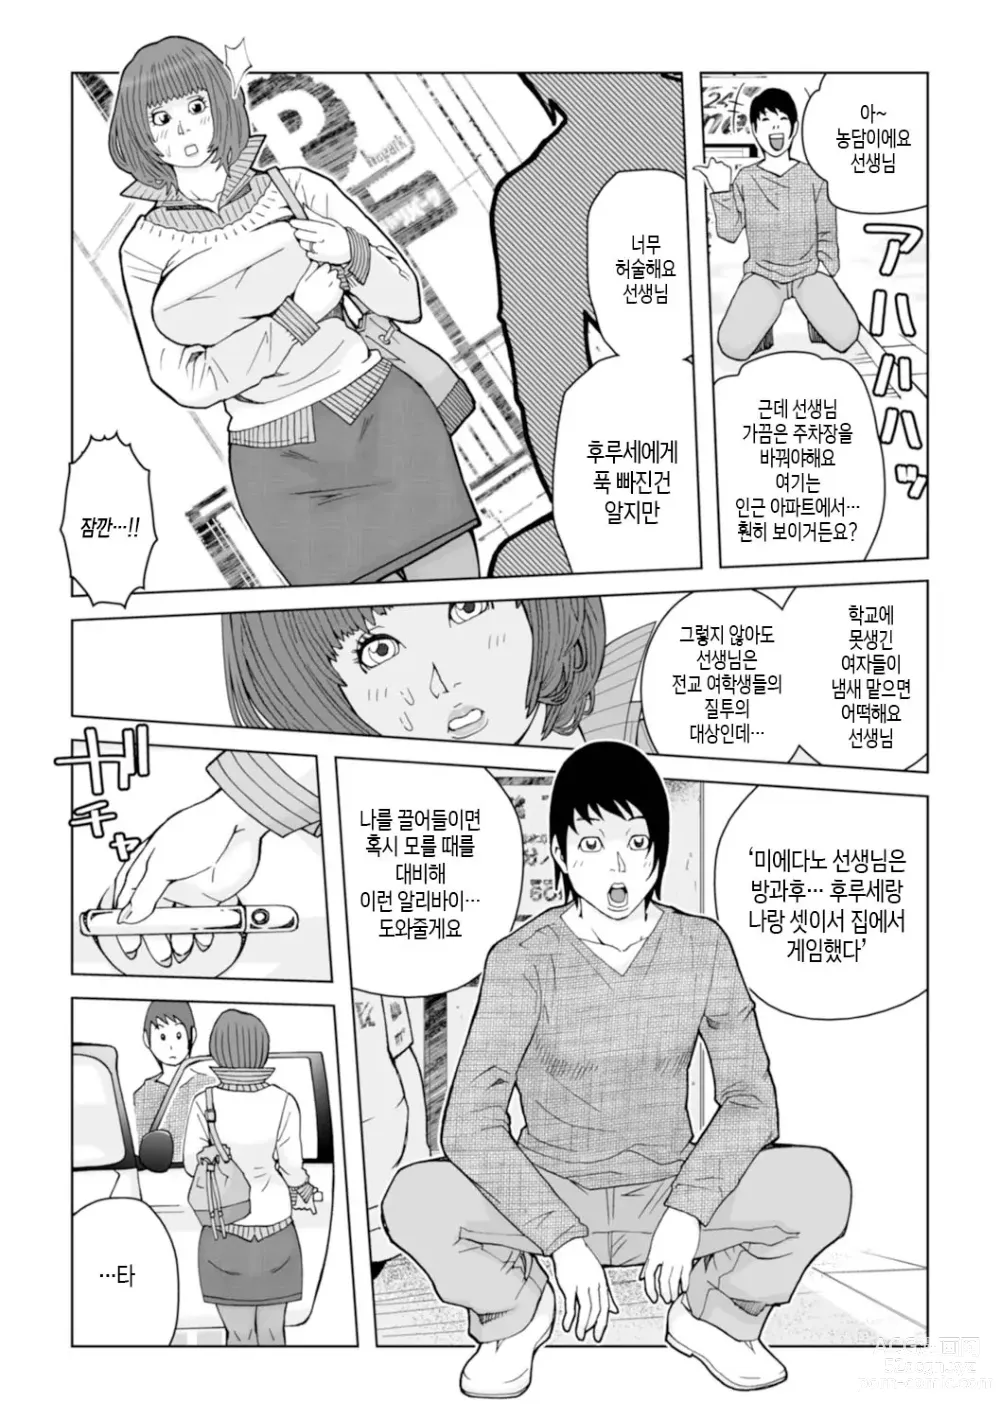 Page 97 of manga 엄마들... 임신시켜도 돼!? 제1권 중 일부